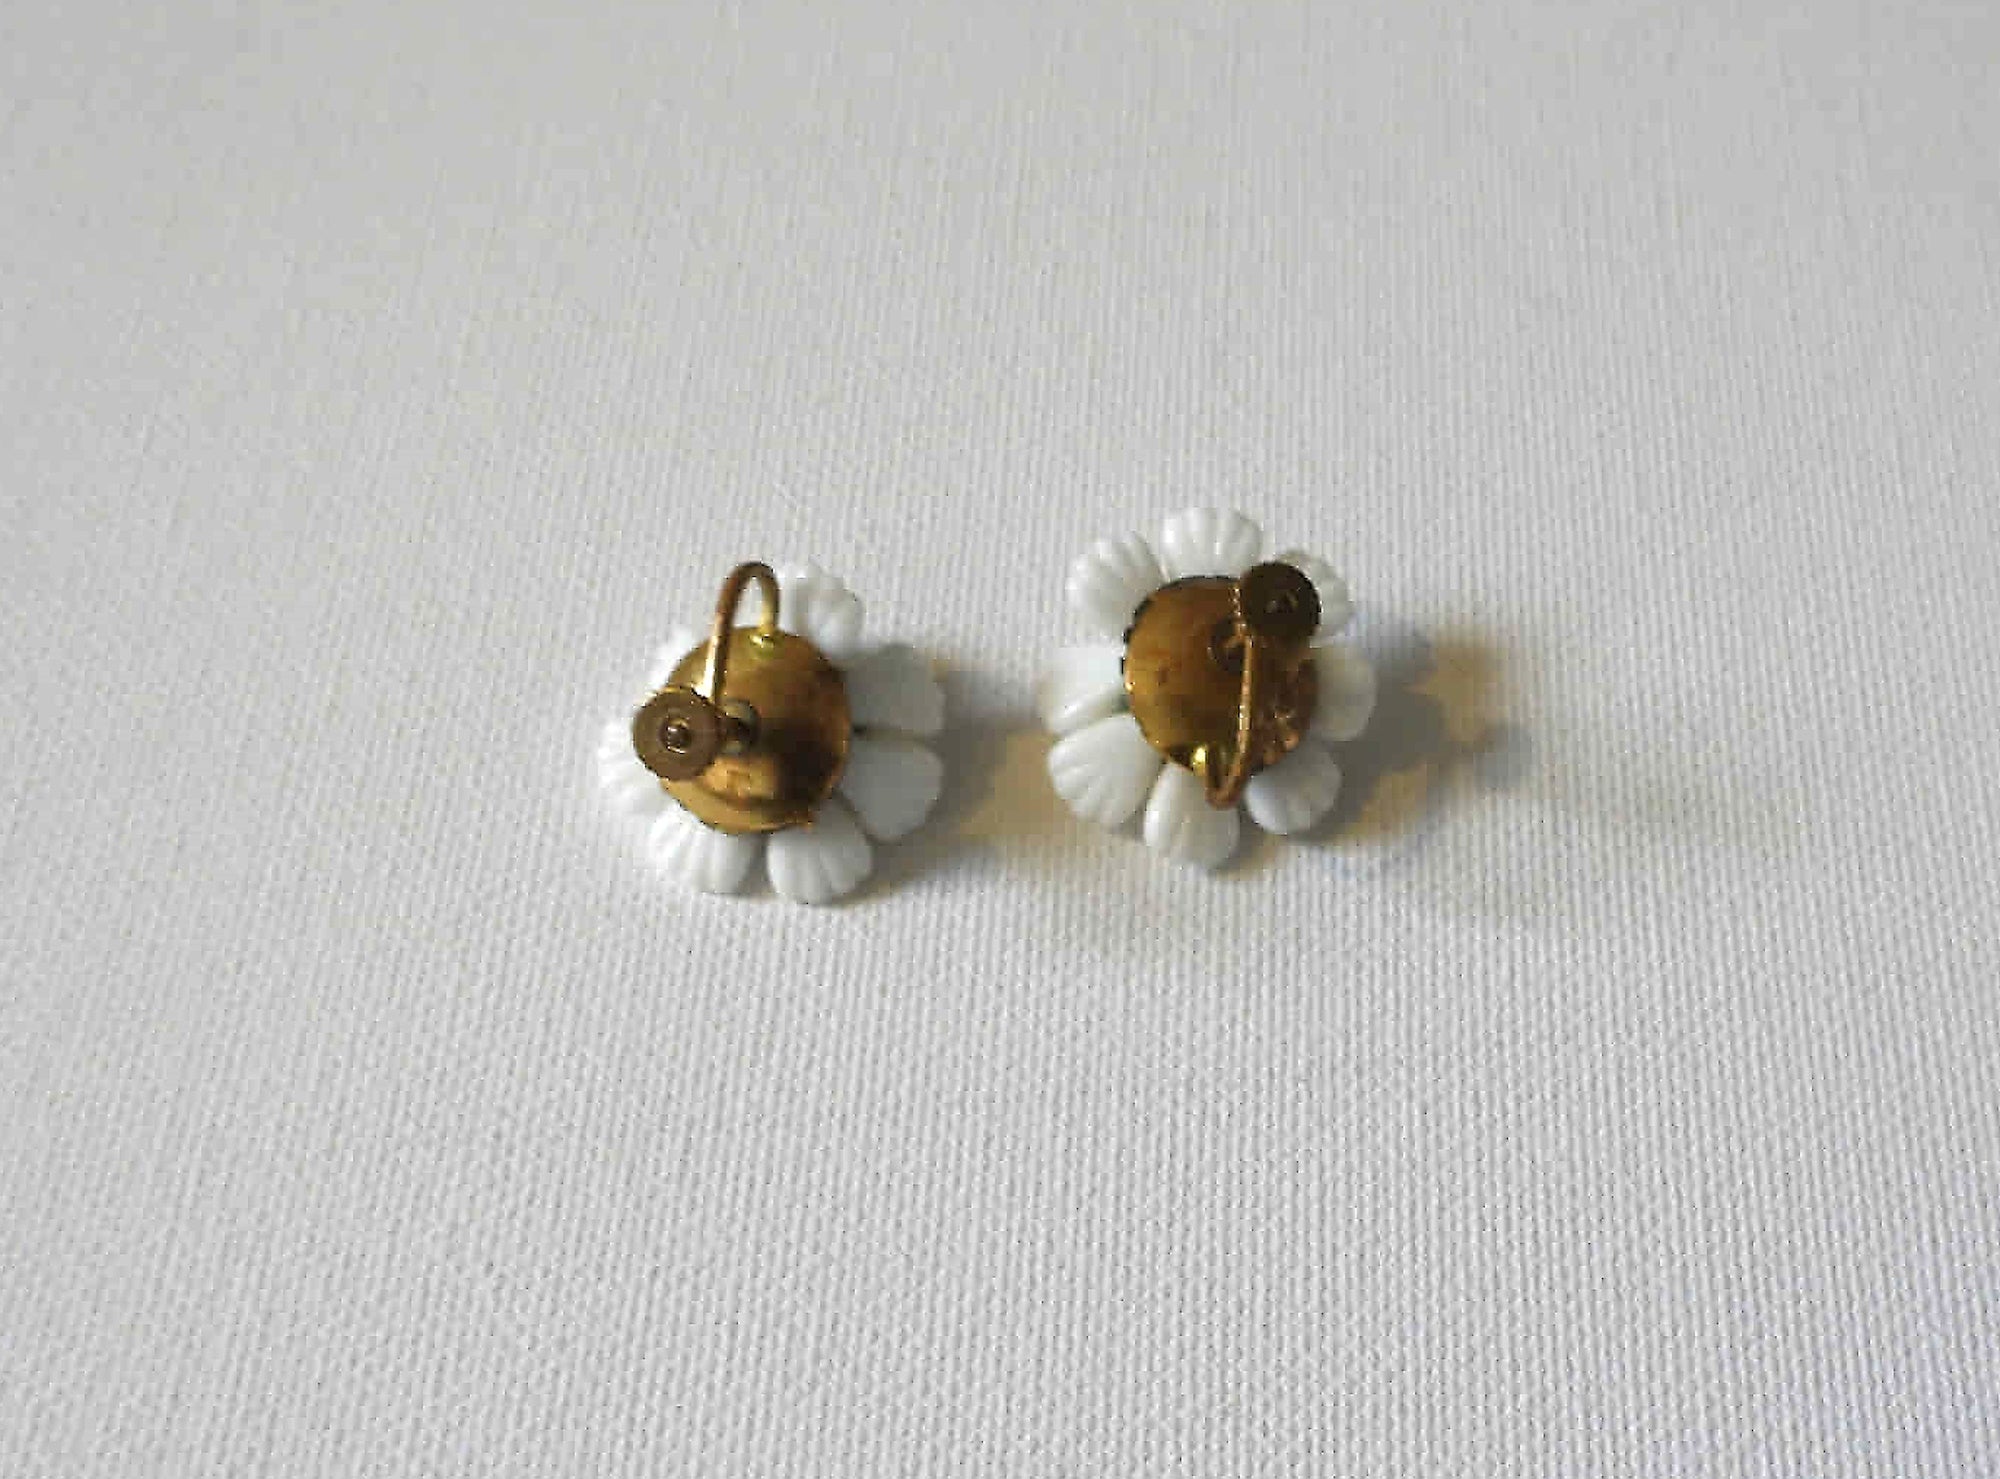 1950s vintage white porcelain flower earrings screw back